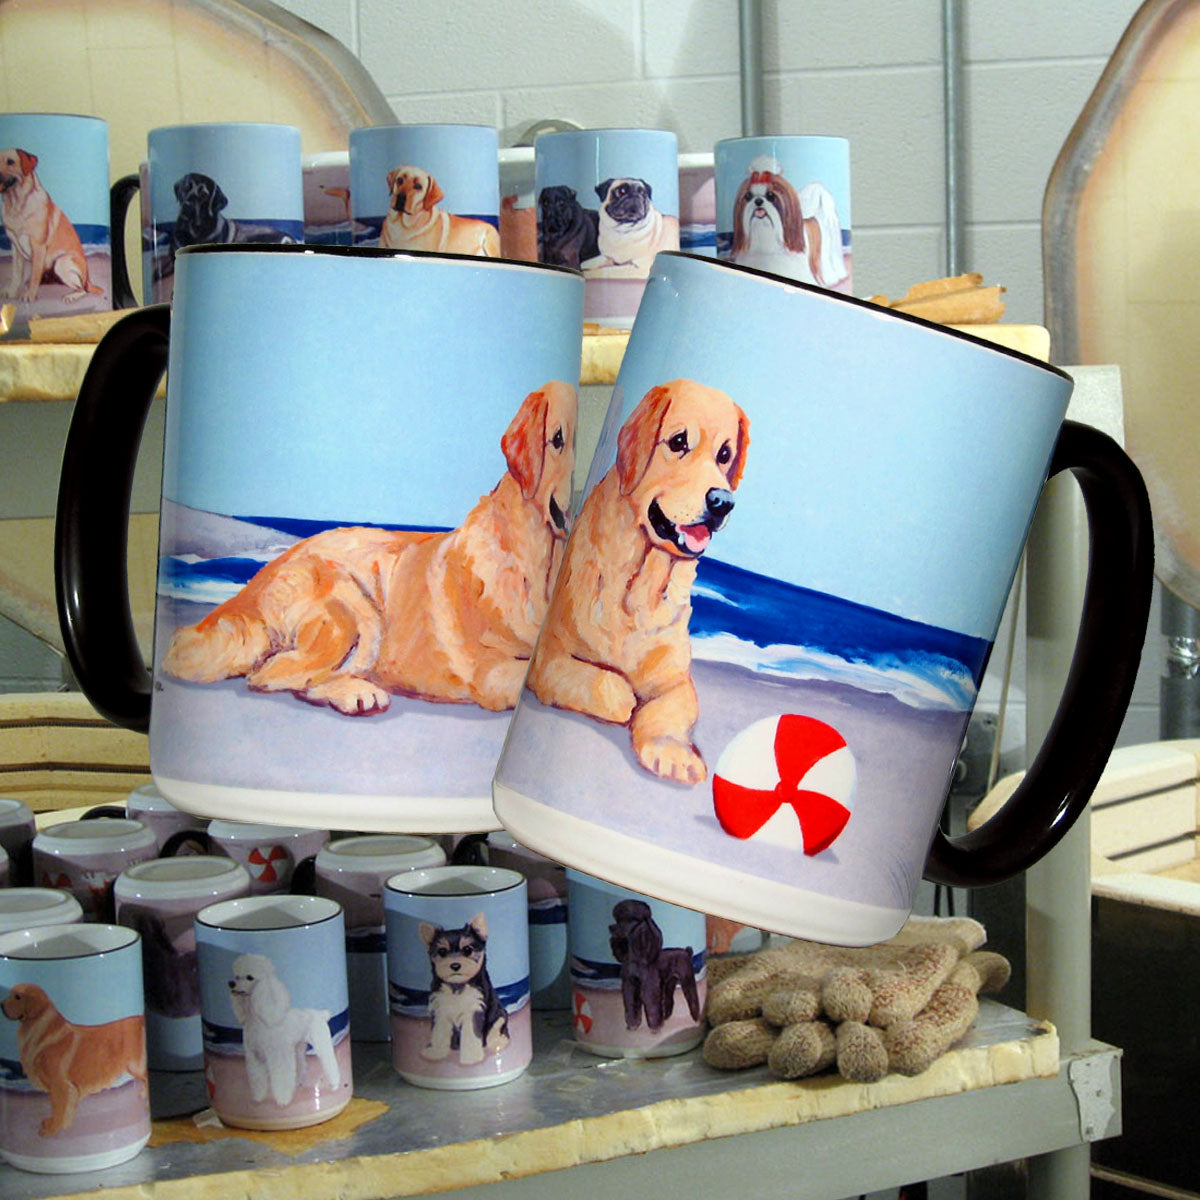 Dog breeds on scenic background mugs.